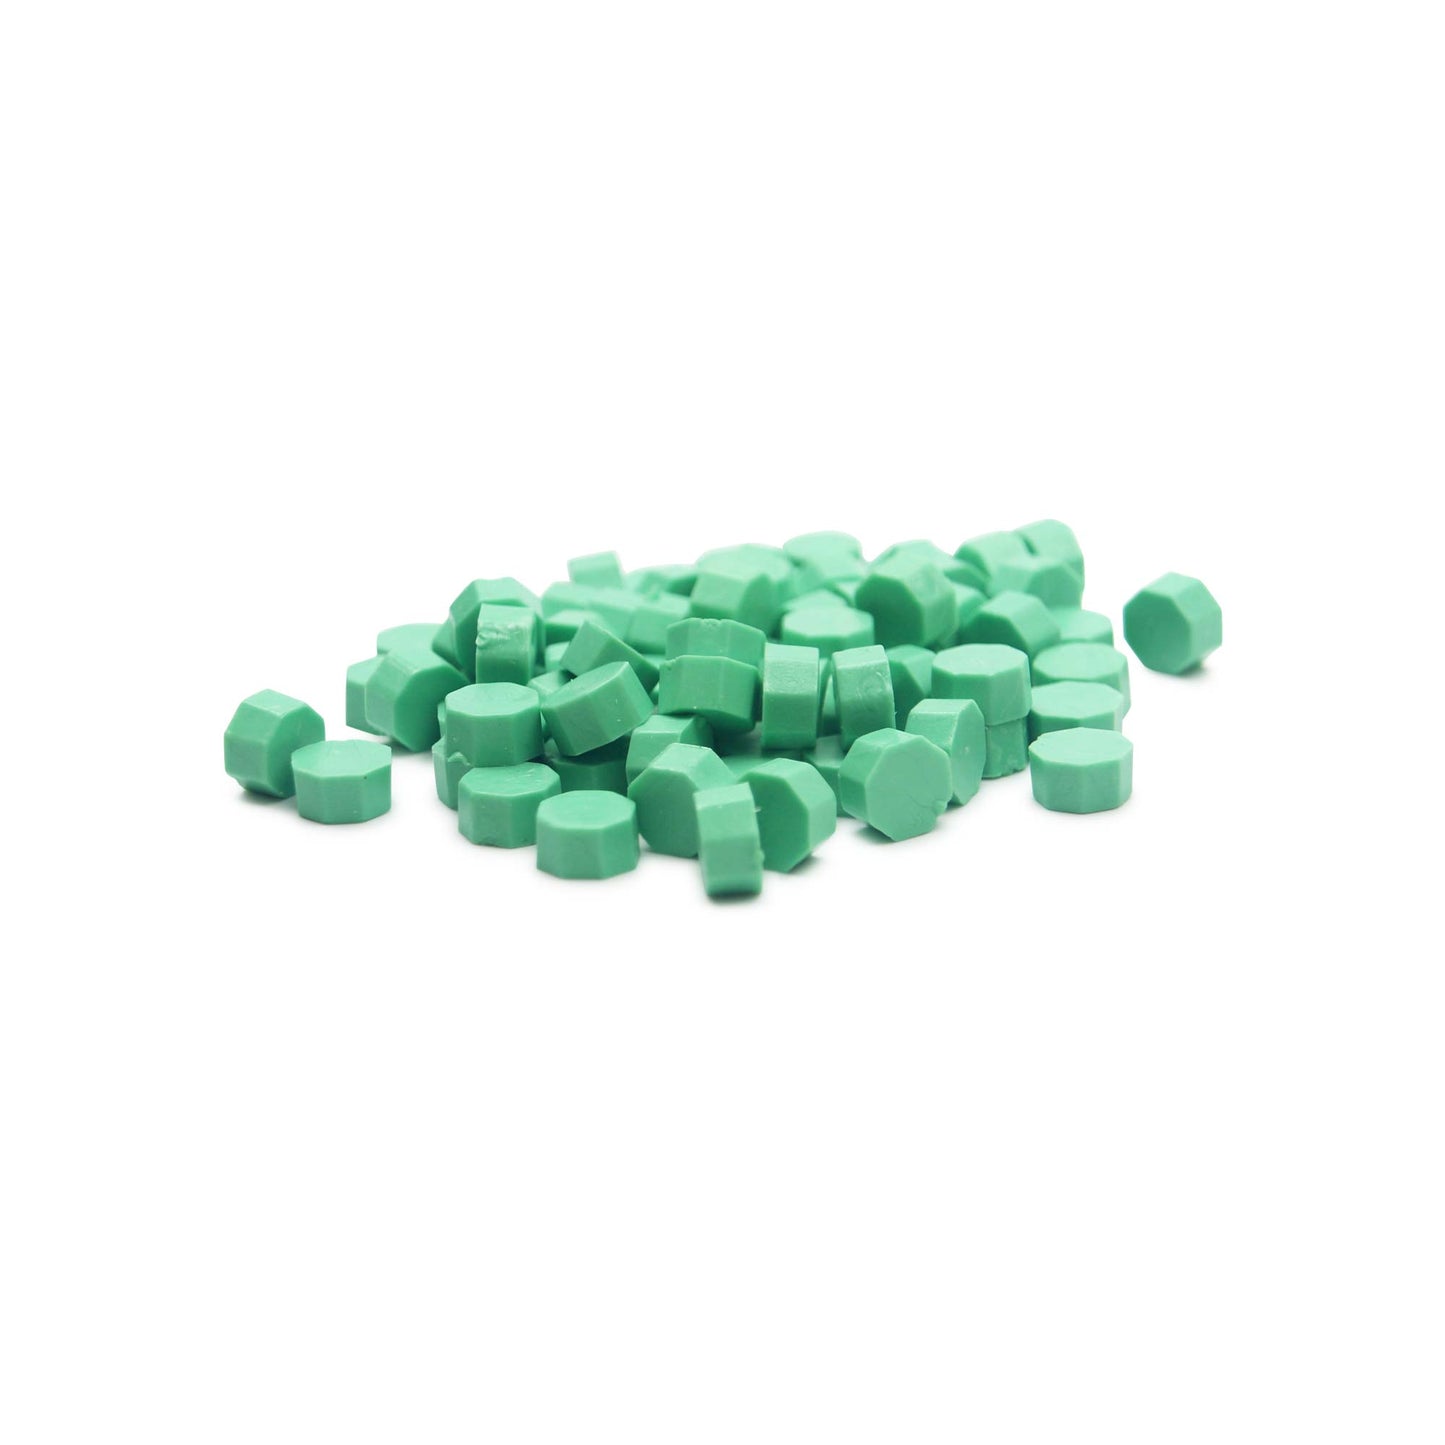 New Fern Green Wax Beads